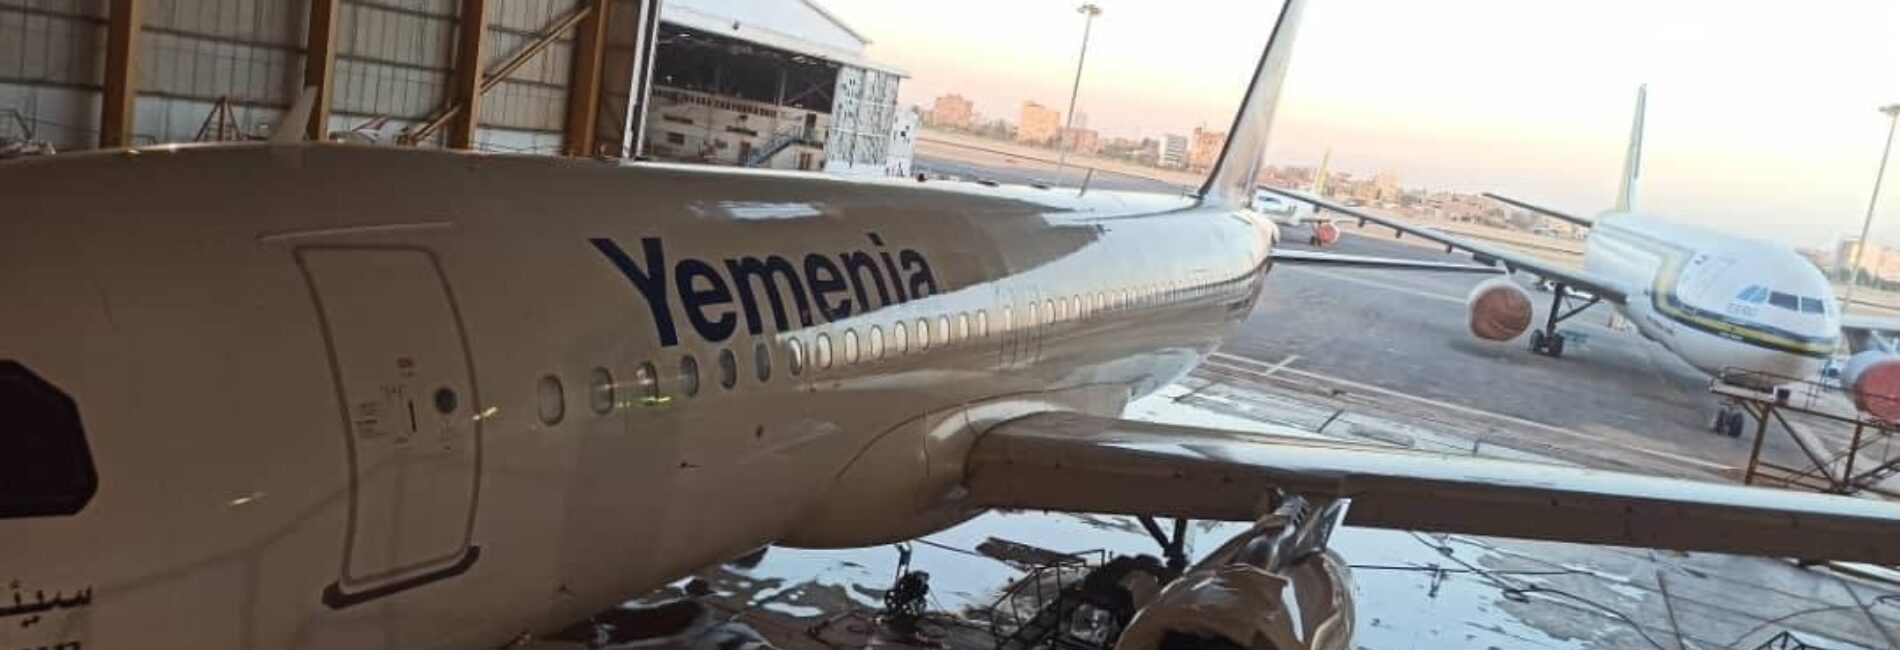 تتفيذا لتوجيهات رئيس مجلس الإدارة.."اليمنية" تنفذ الفحص الأثقل لطائرة من طراز ايرباص 320 في الخرطوم